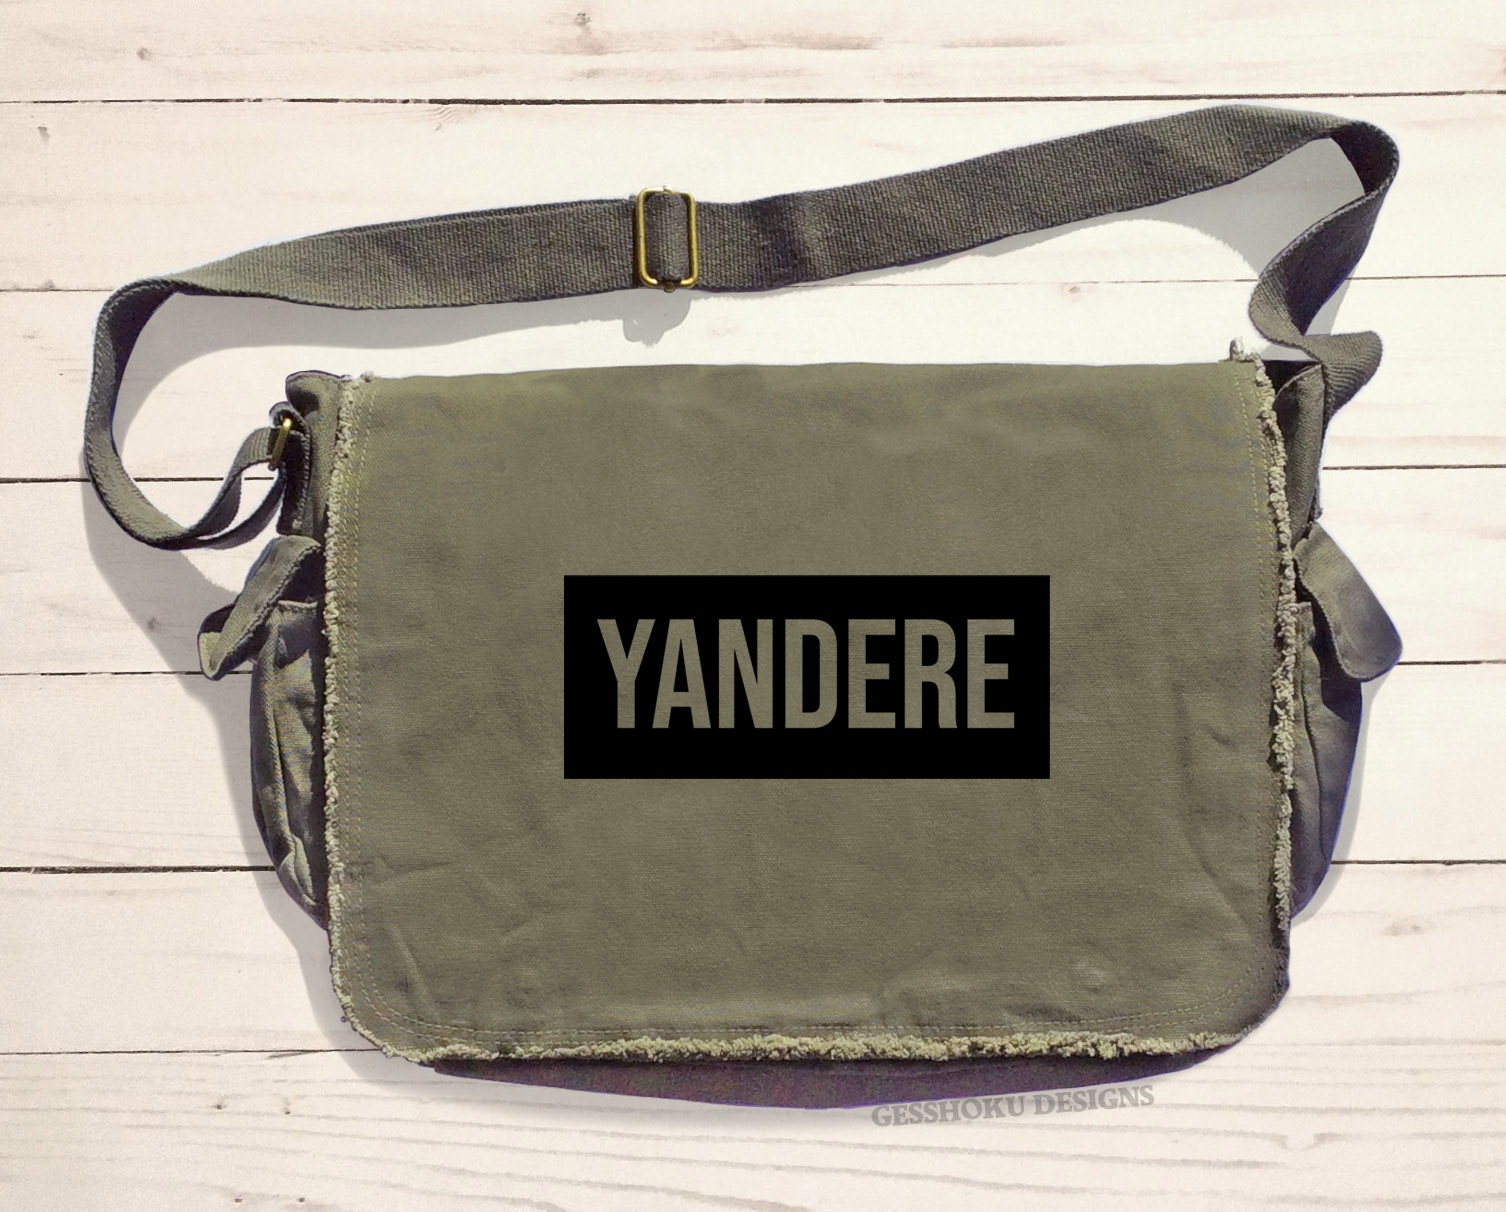 Yandere Messenger Bag - Khaki Green